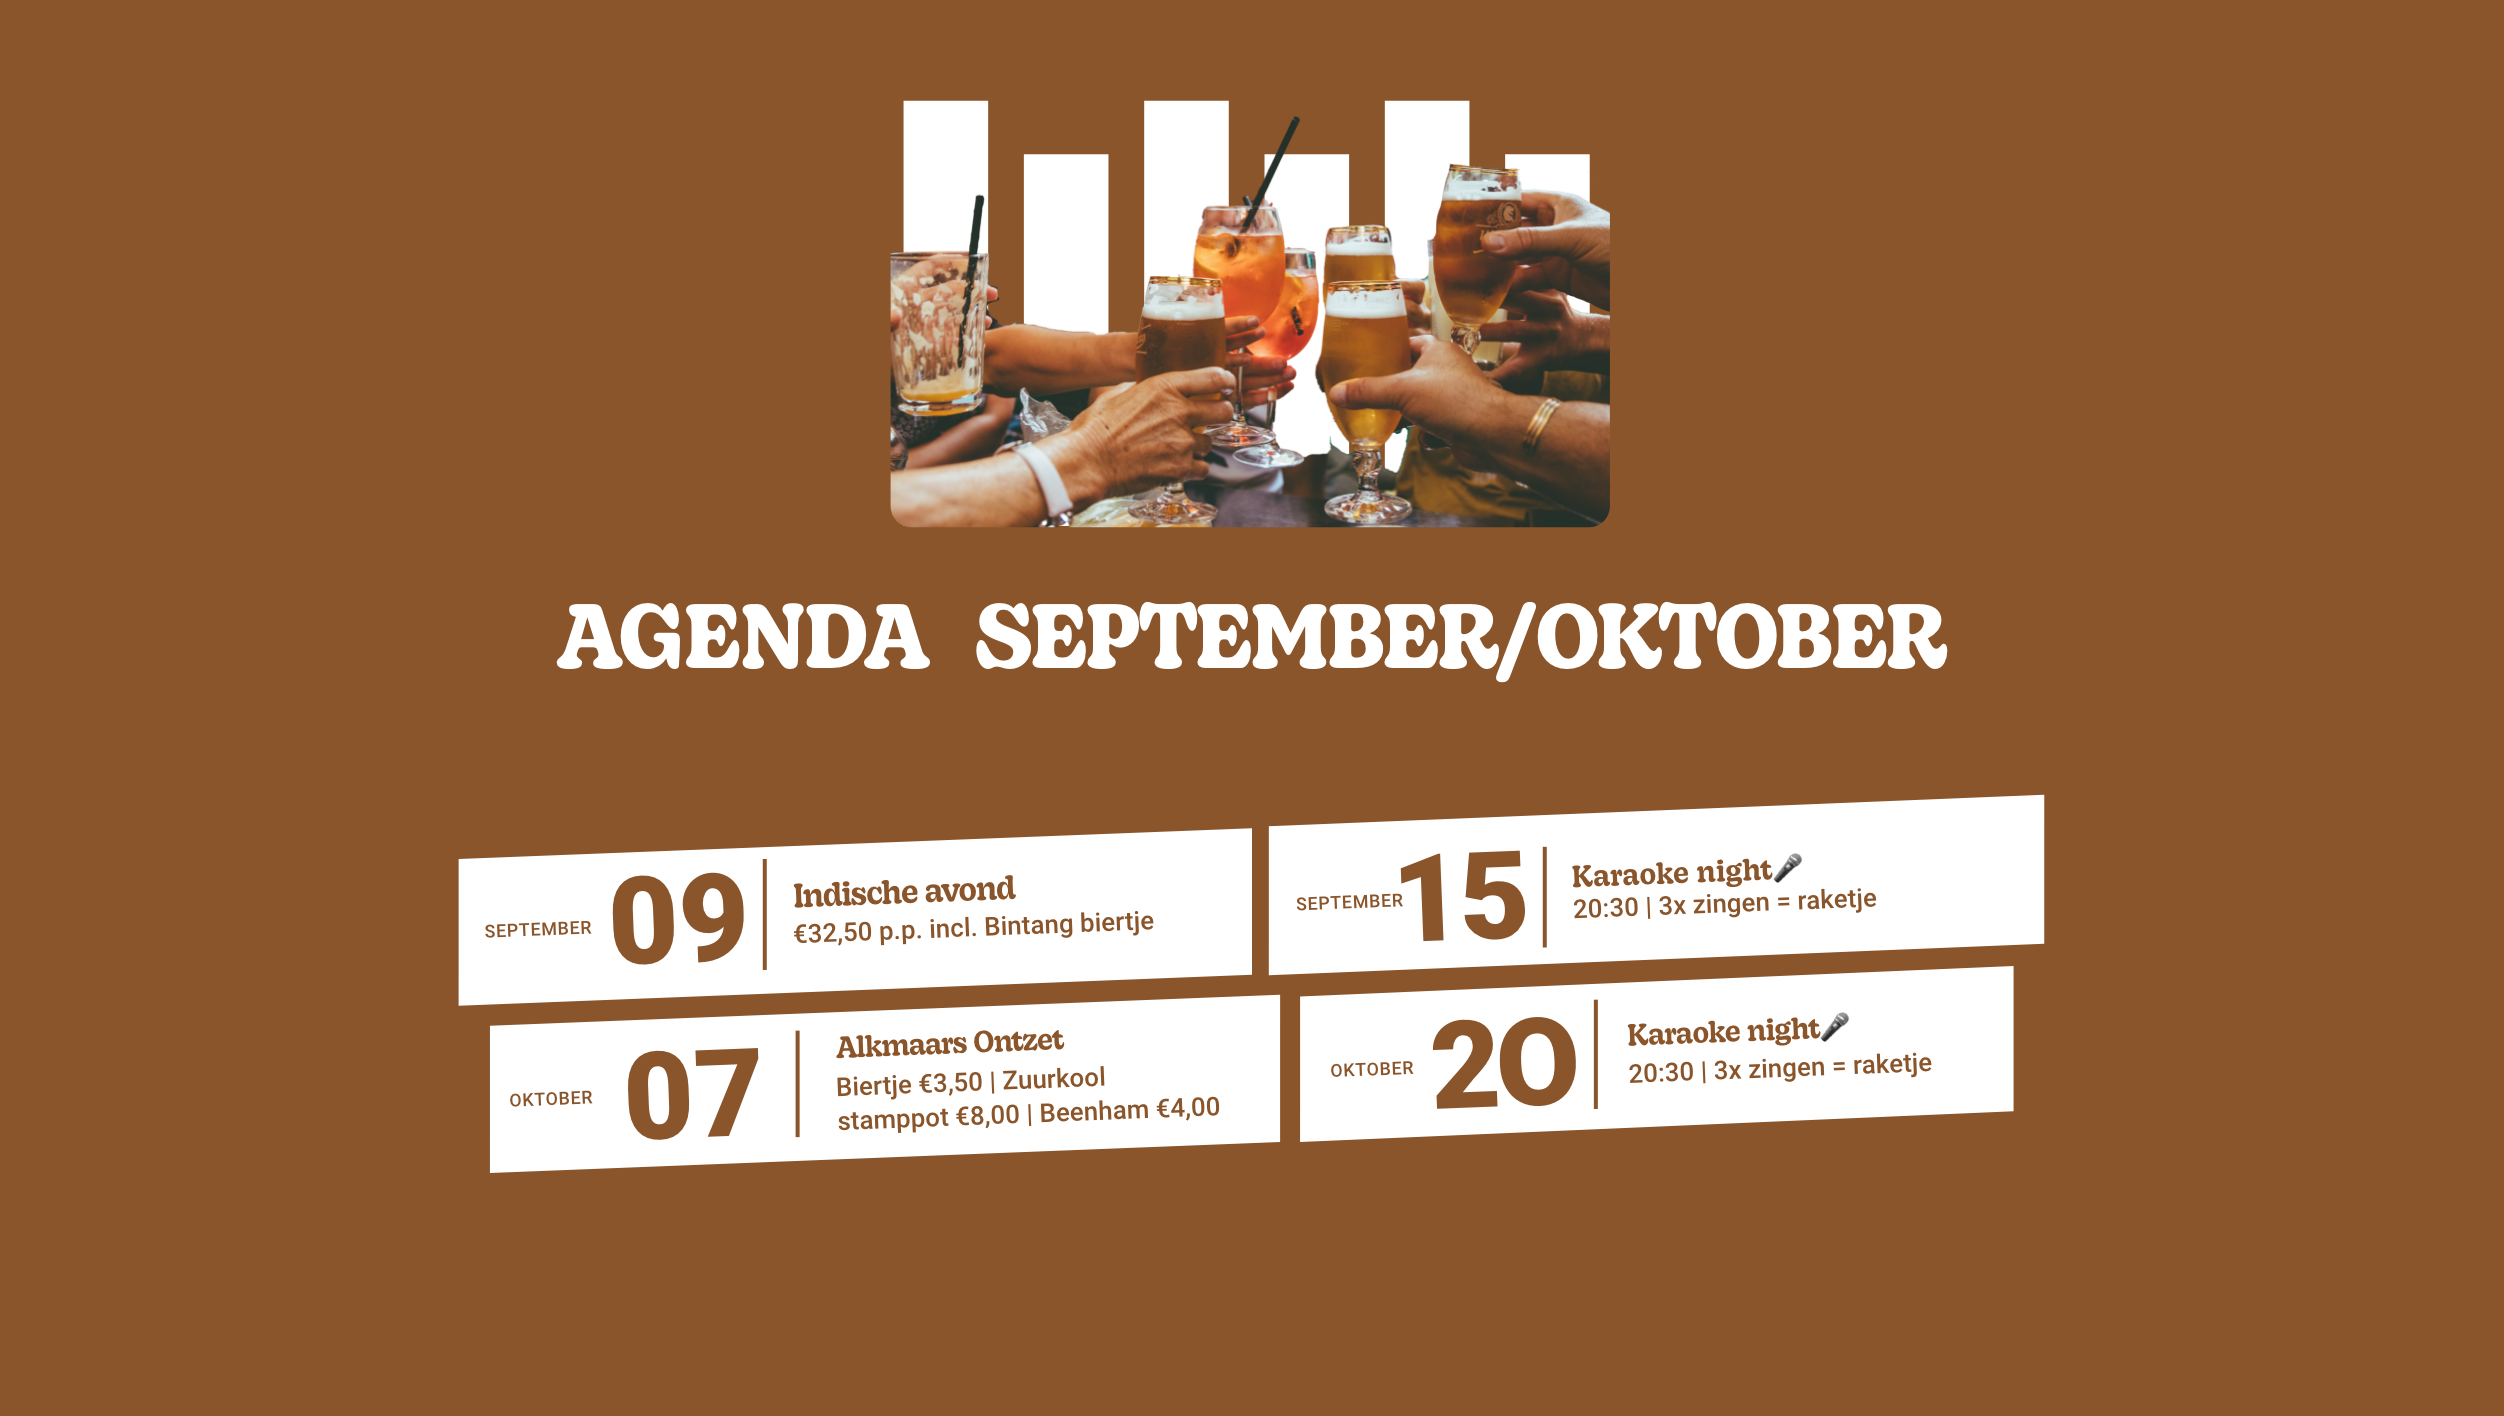 Agenda september/oktober